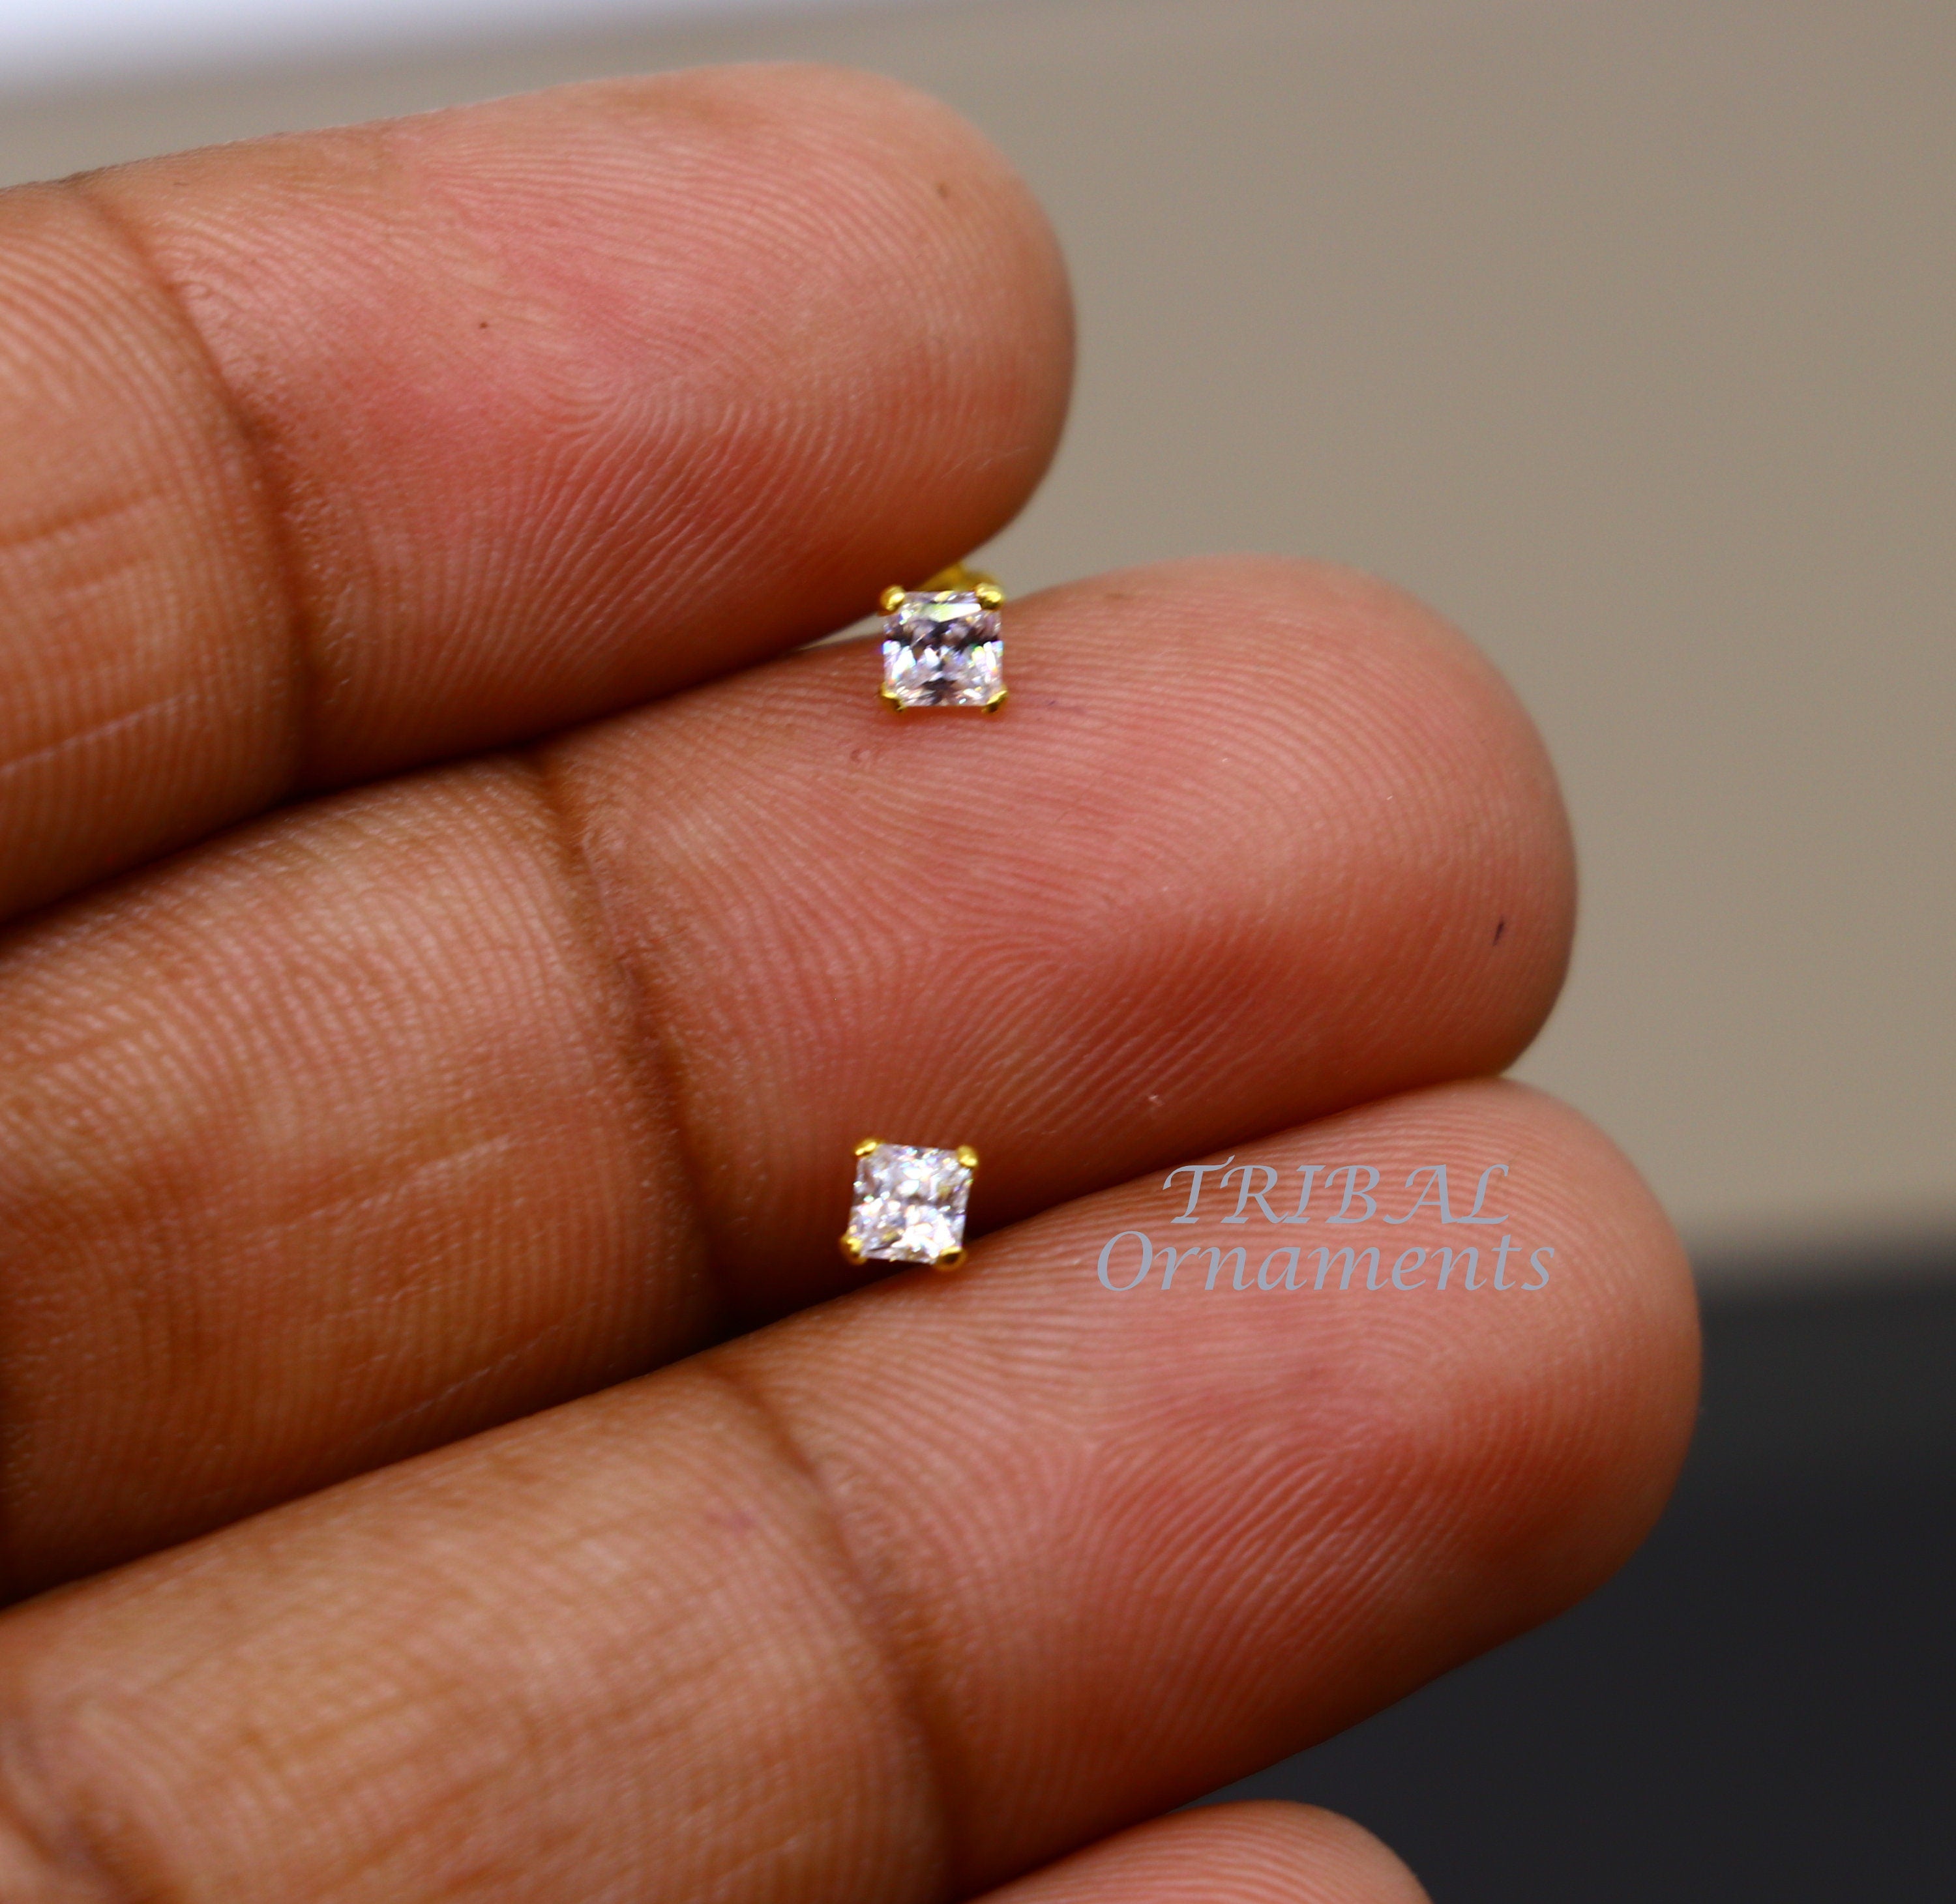 2PCS Square Stud Earrings, Gold Diamond Shape Post Earring, Dangle Stud,  Jewelry Making ,14K Gold Tone E0534-PG - Etsy